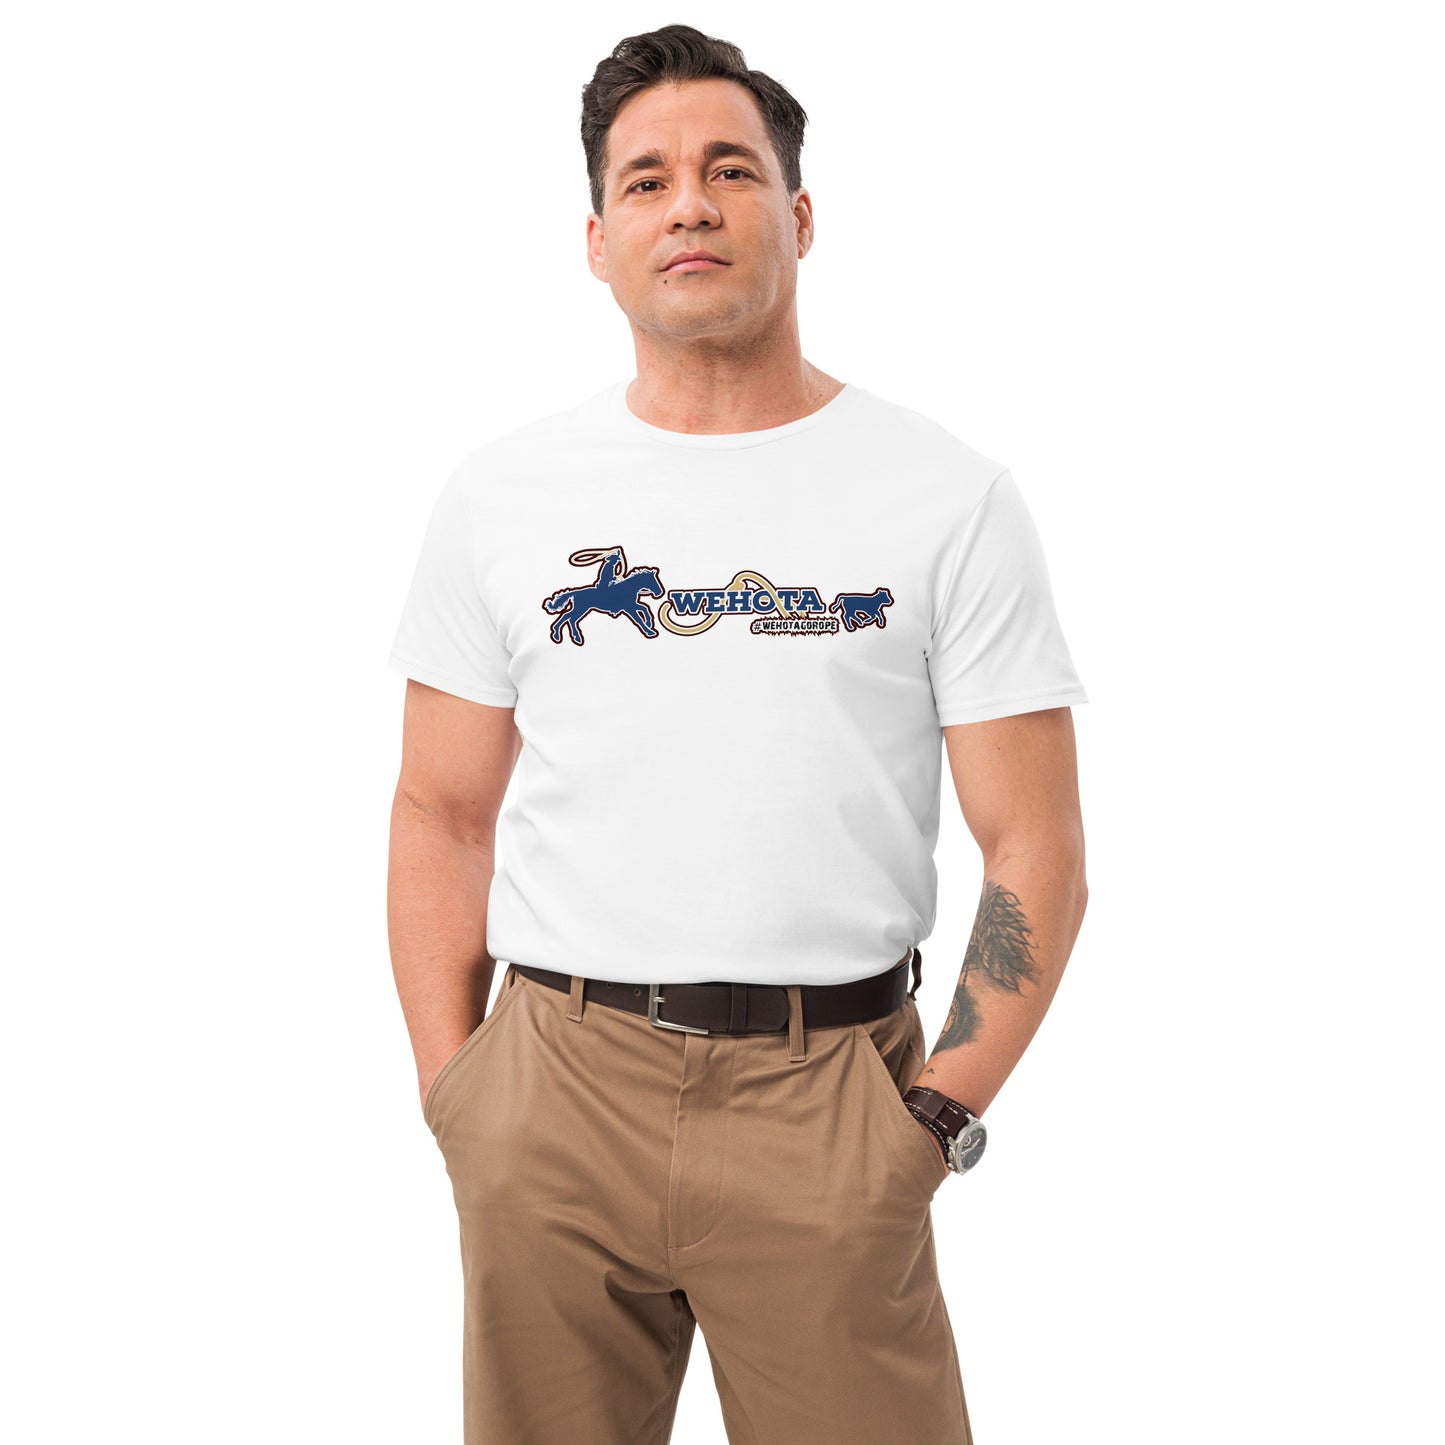 Men's premium cotton t-shirt Wehota Roping